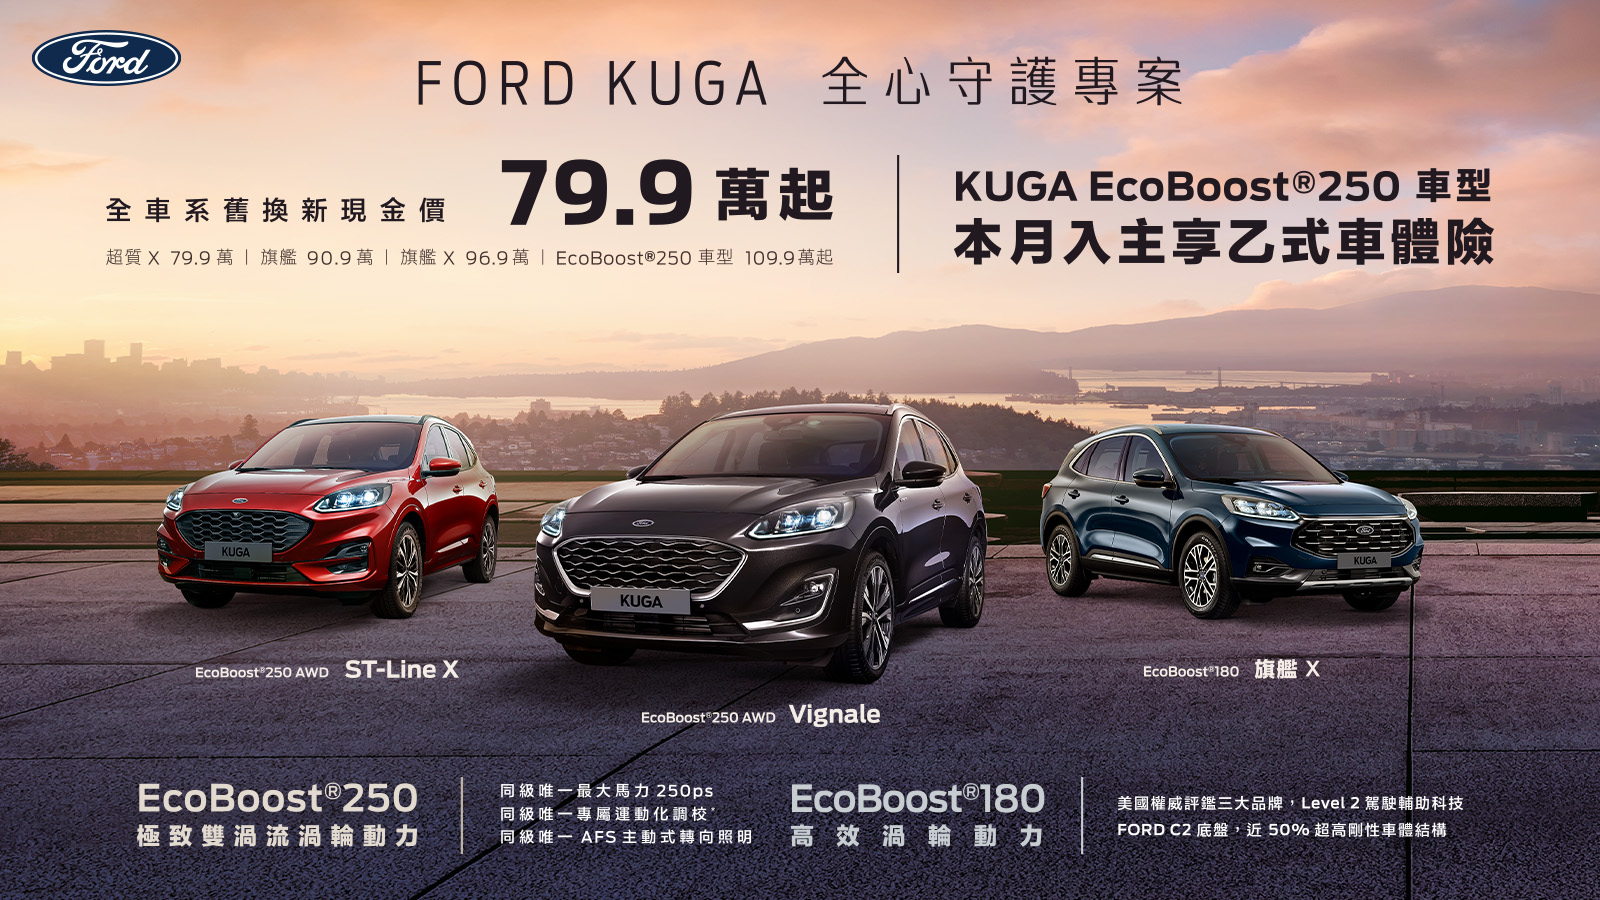 純正運動跑旅New Ford Kuga舊換新79.9萬起 指定車型再享乙式險 New Ford Focus享乙式險及7,999元低月付 電尾特仕版舊換新81.4萬起